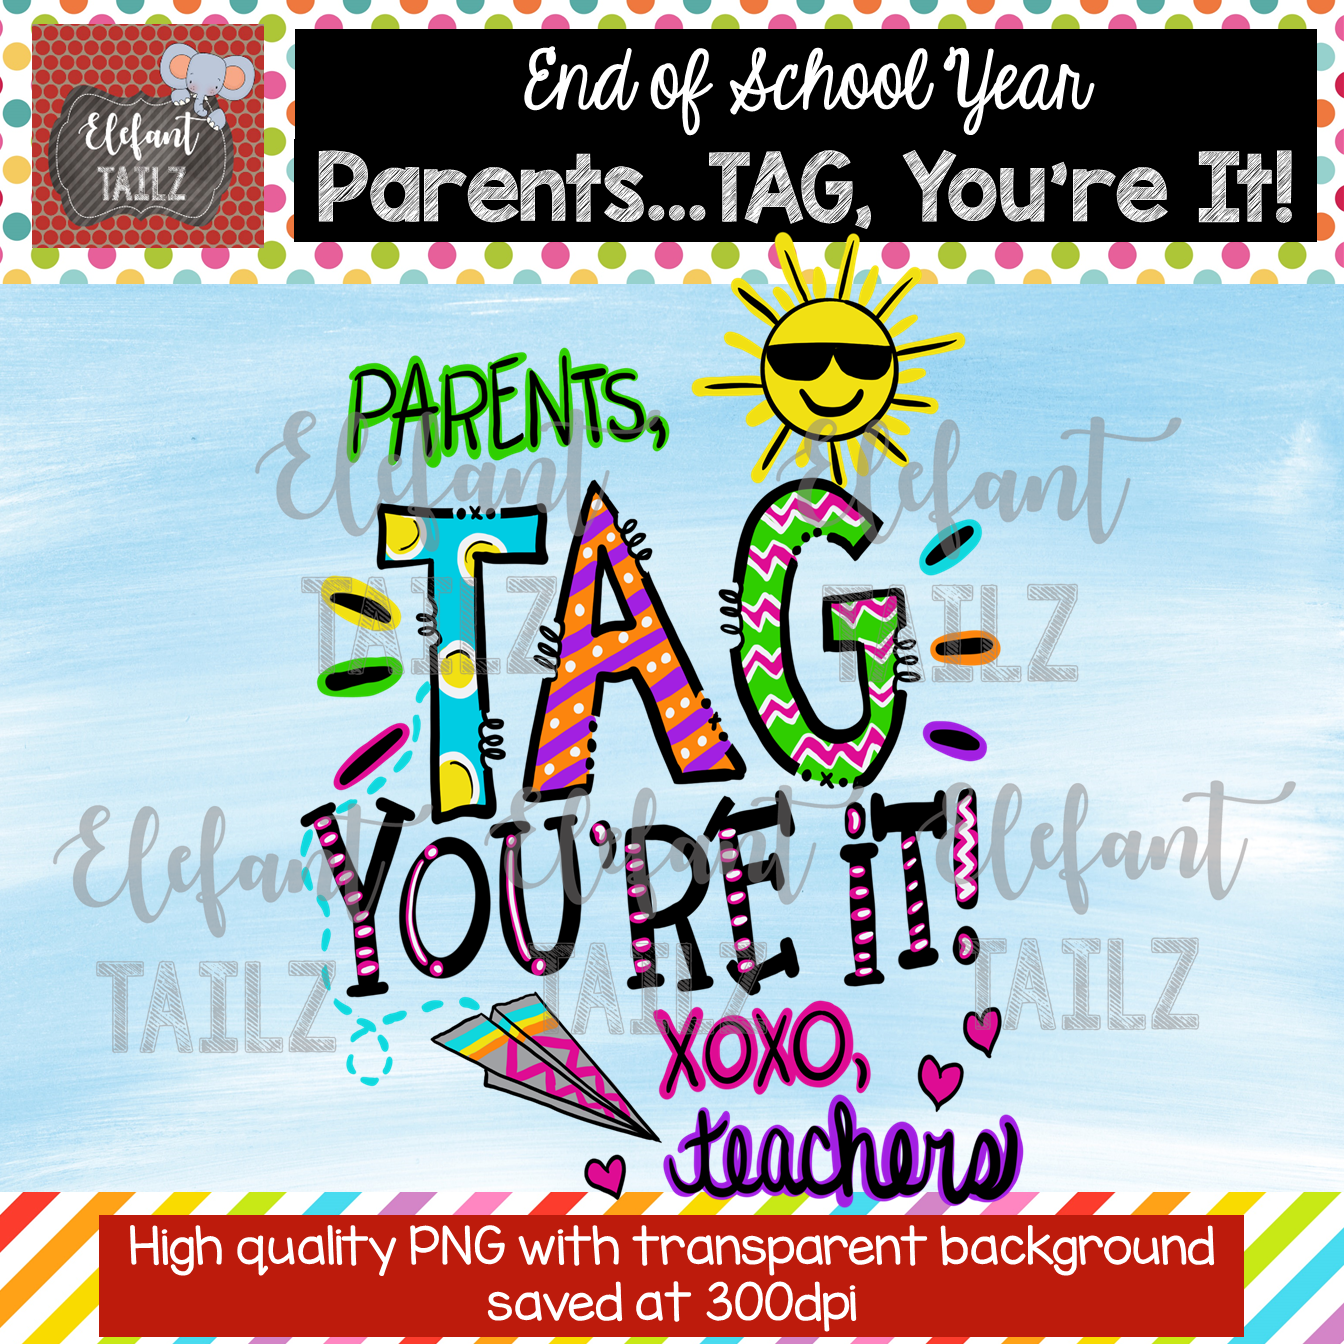 Parents, Tag You're It!